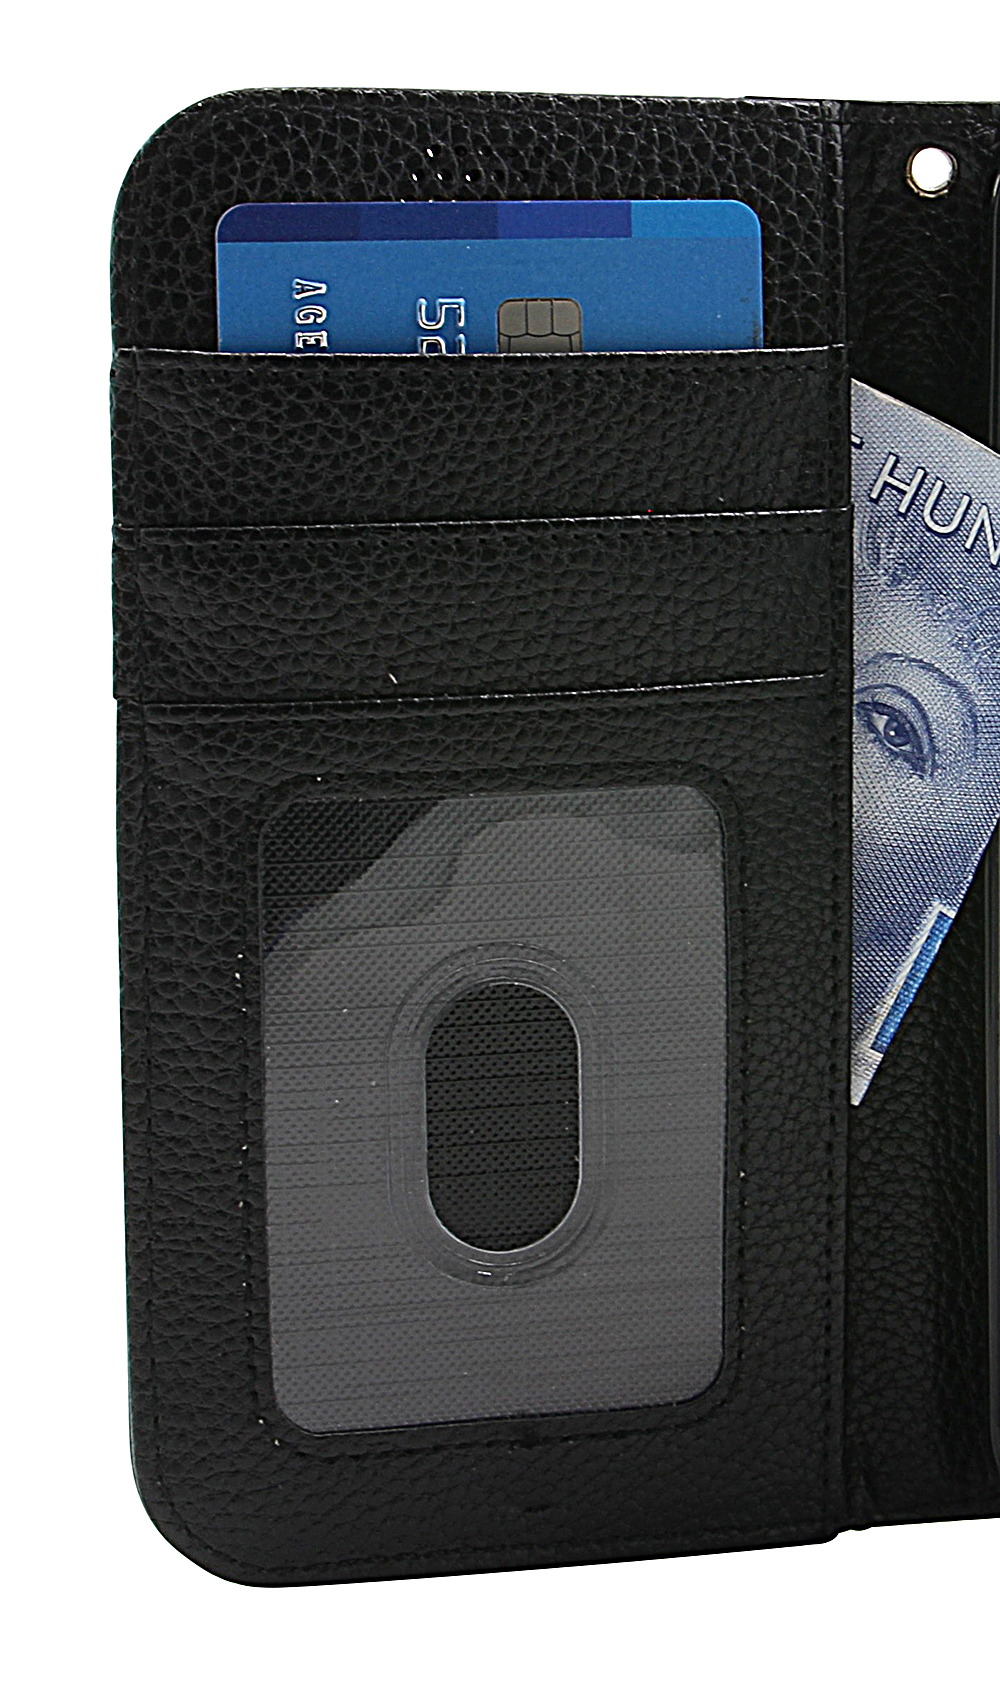 billigamobilskydd.seNew Standcase Wallet Nokia 6